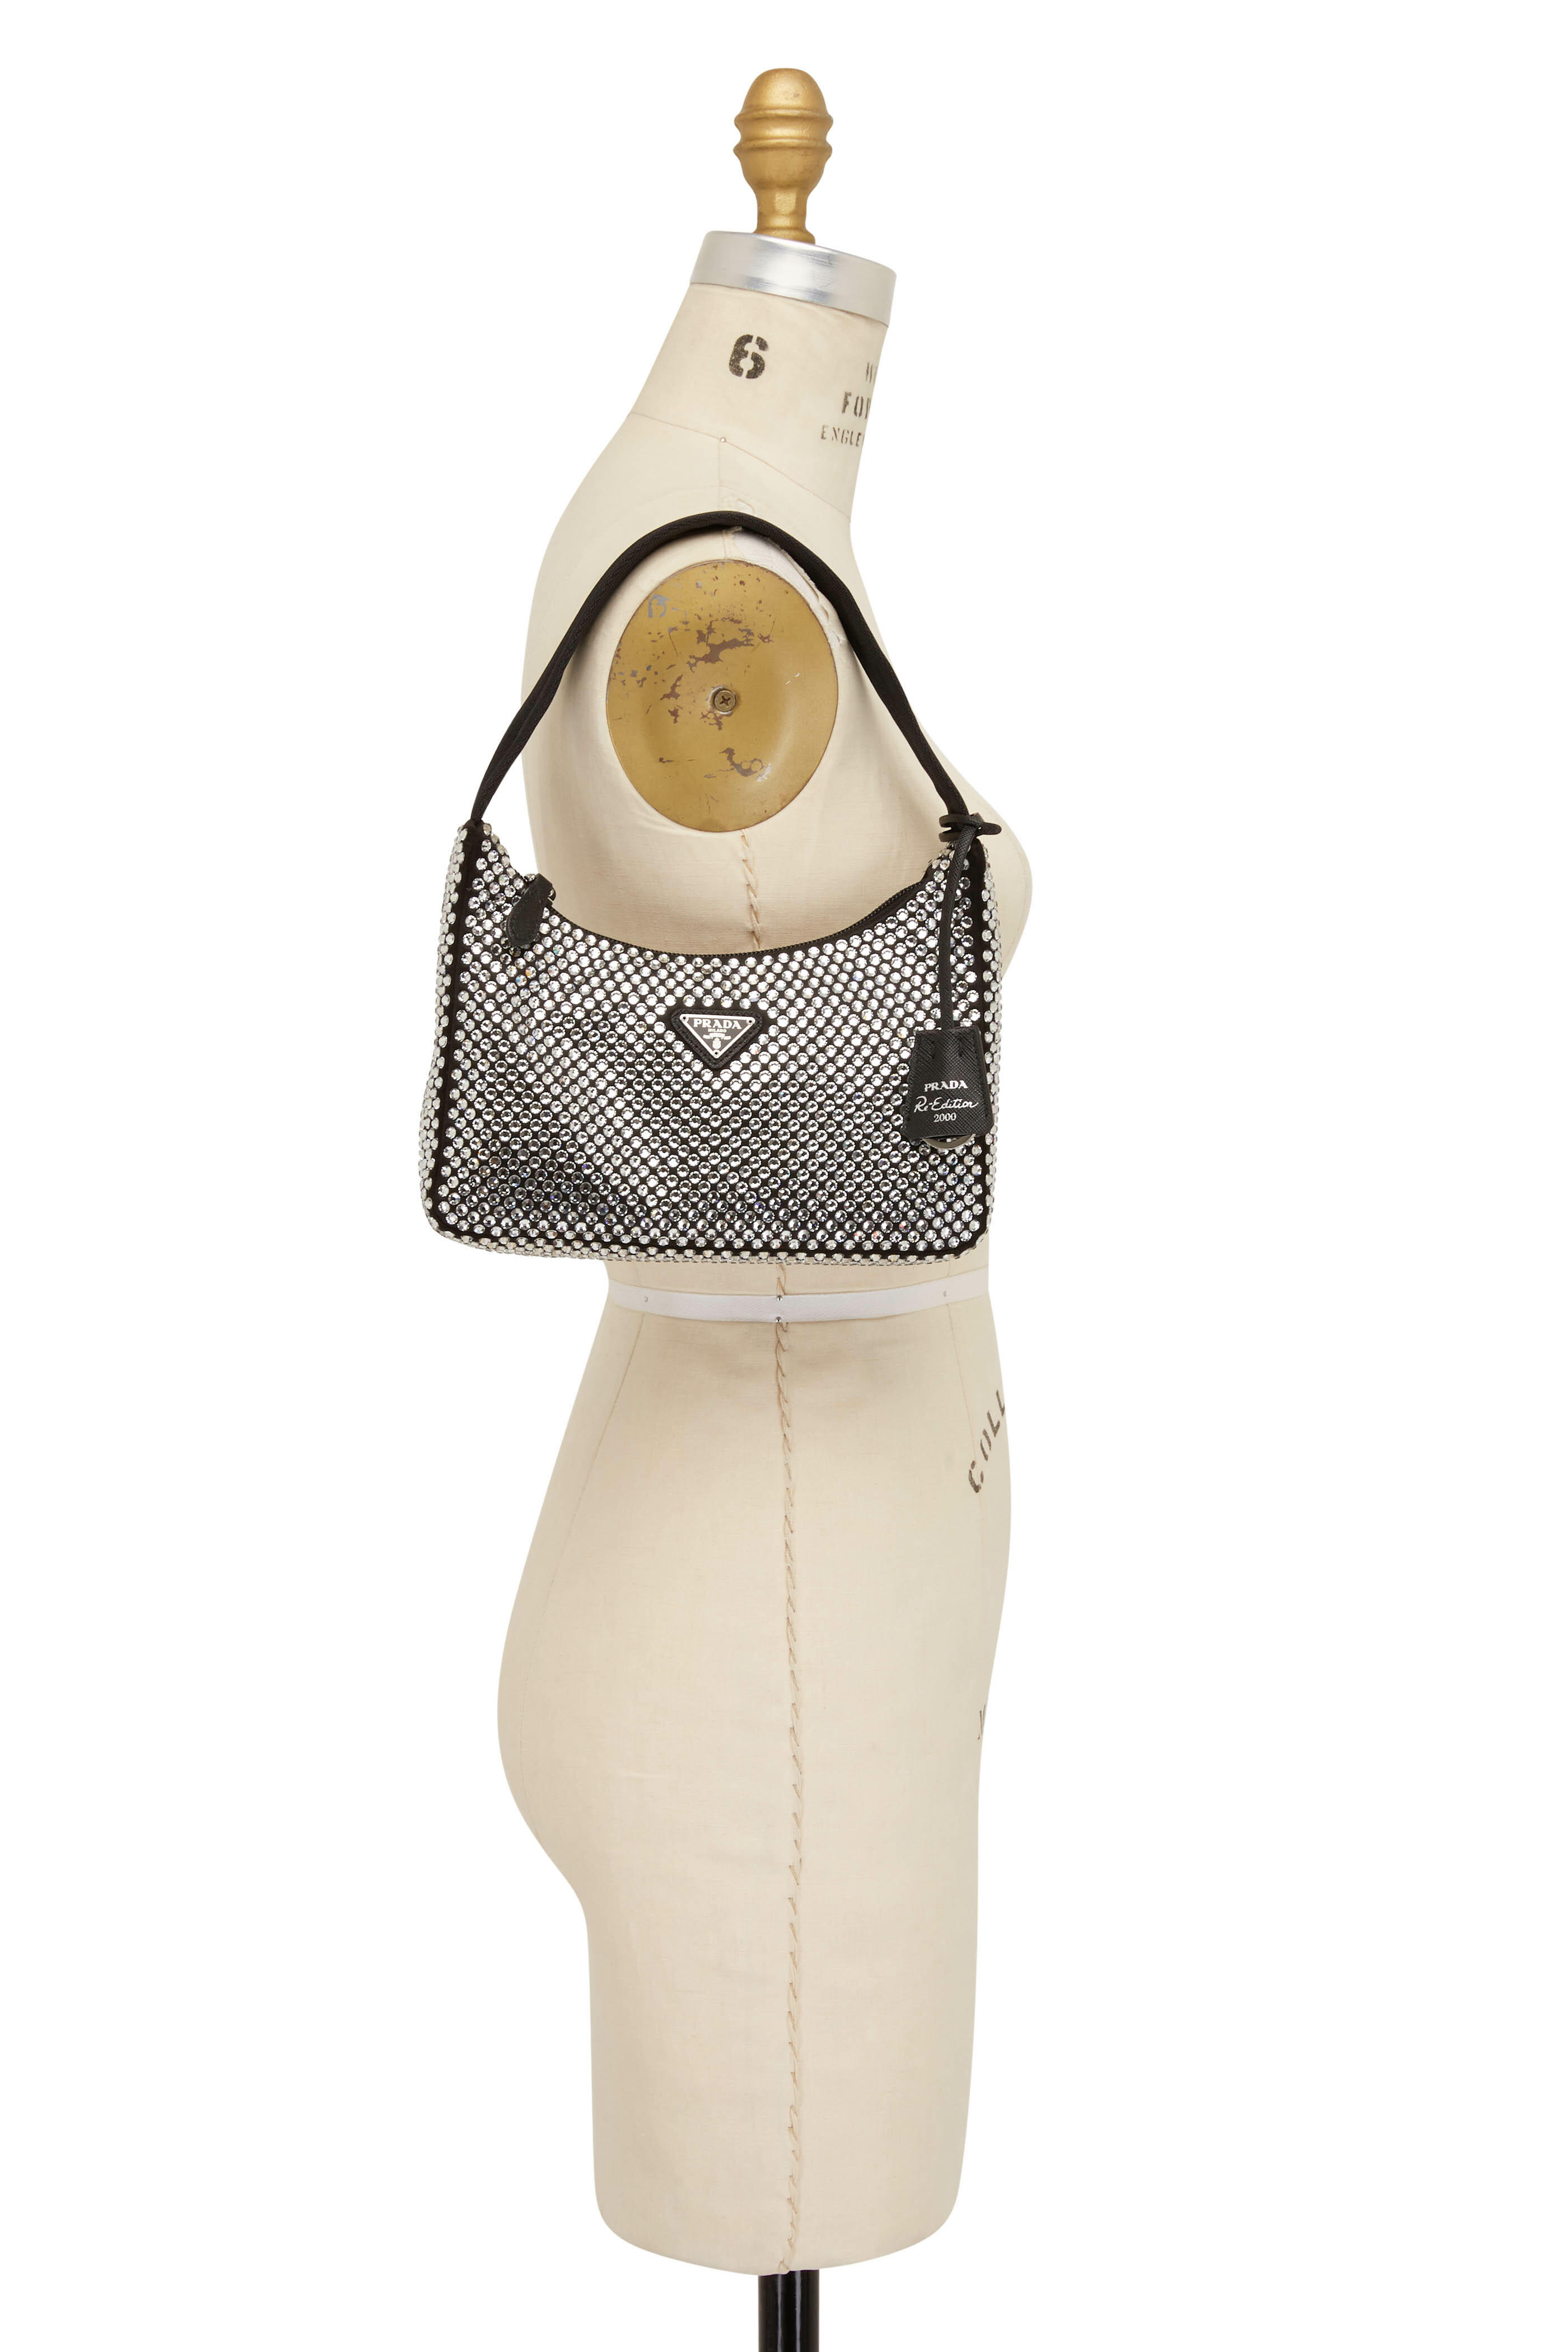 Prada Re-Edition 2000 Zip Shoulder Bag